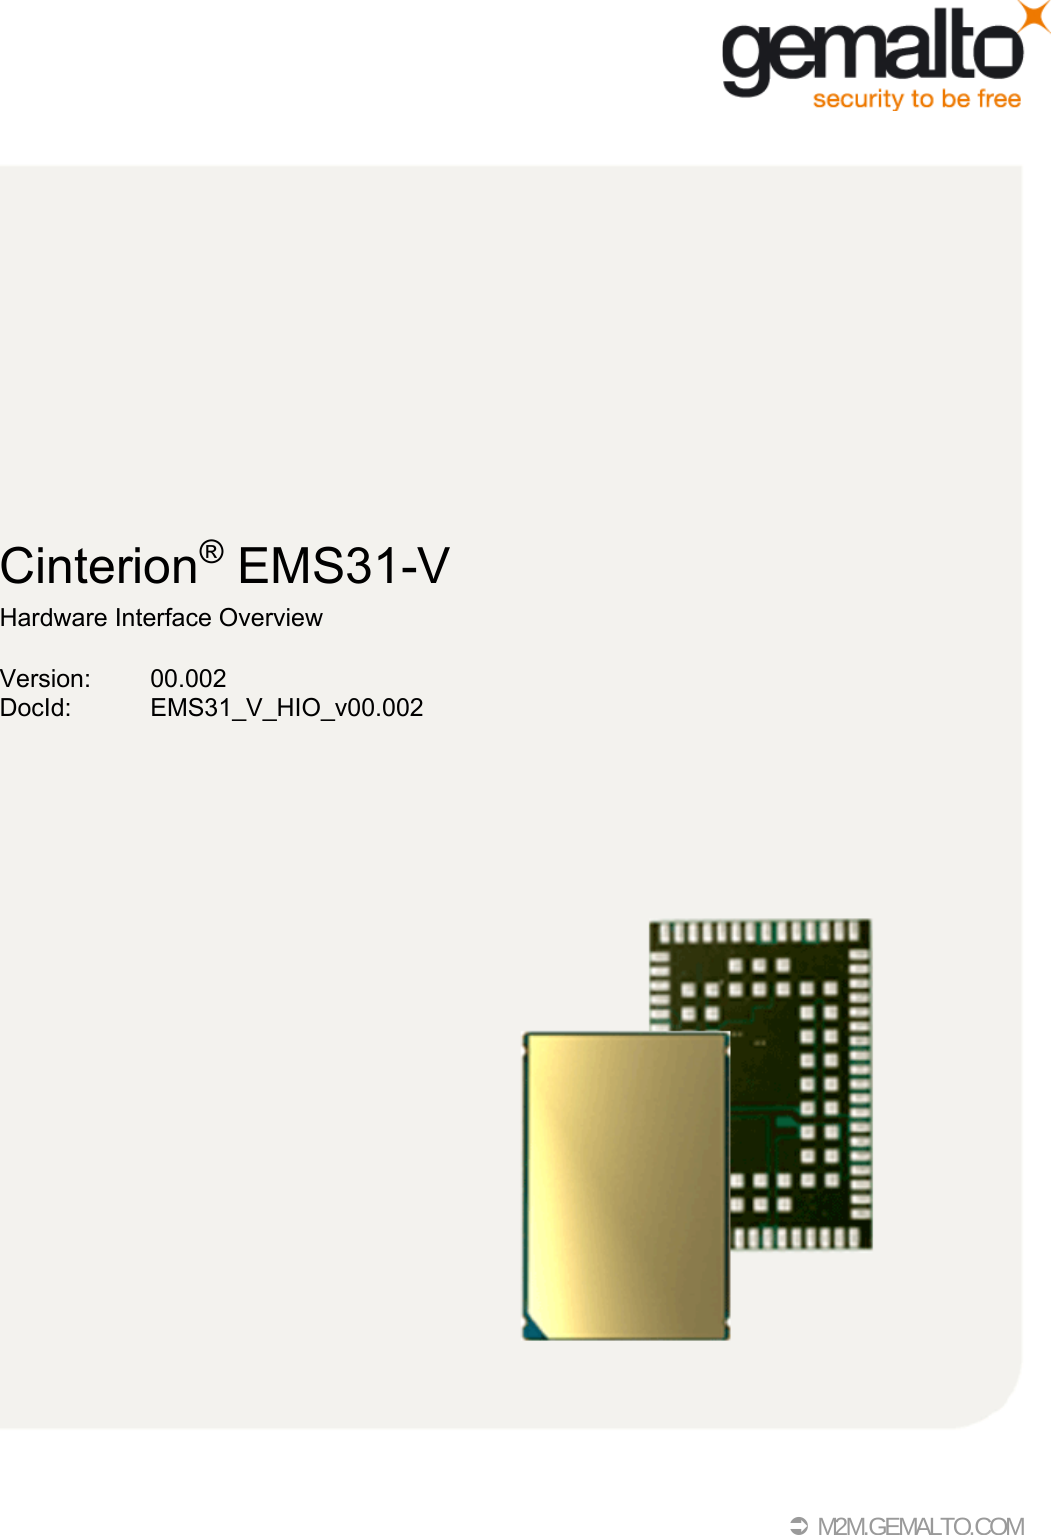  M2M.GEMALTO.COMCinterion® EMS31-VHardware Interface OverviewVersion: 00.002DocId: EMS31_V_HIO_v00.002